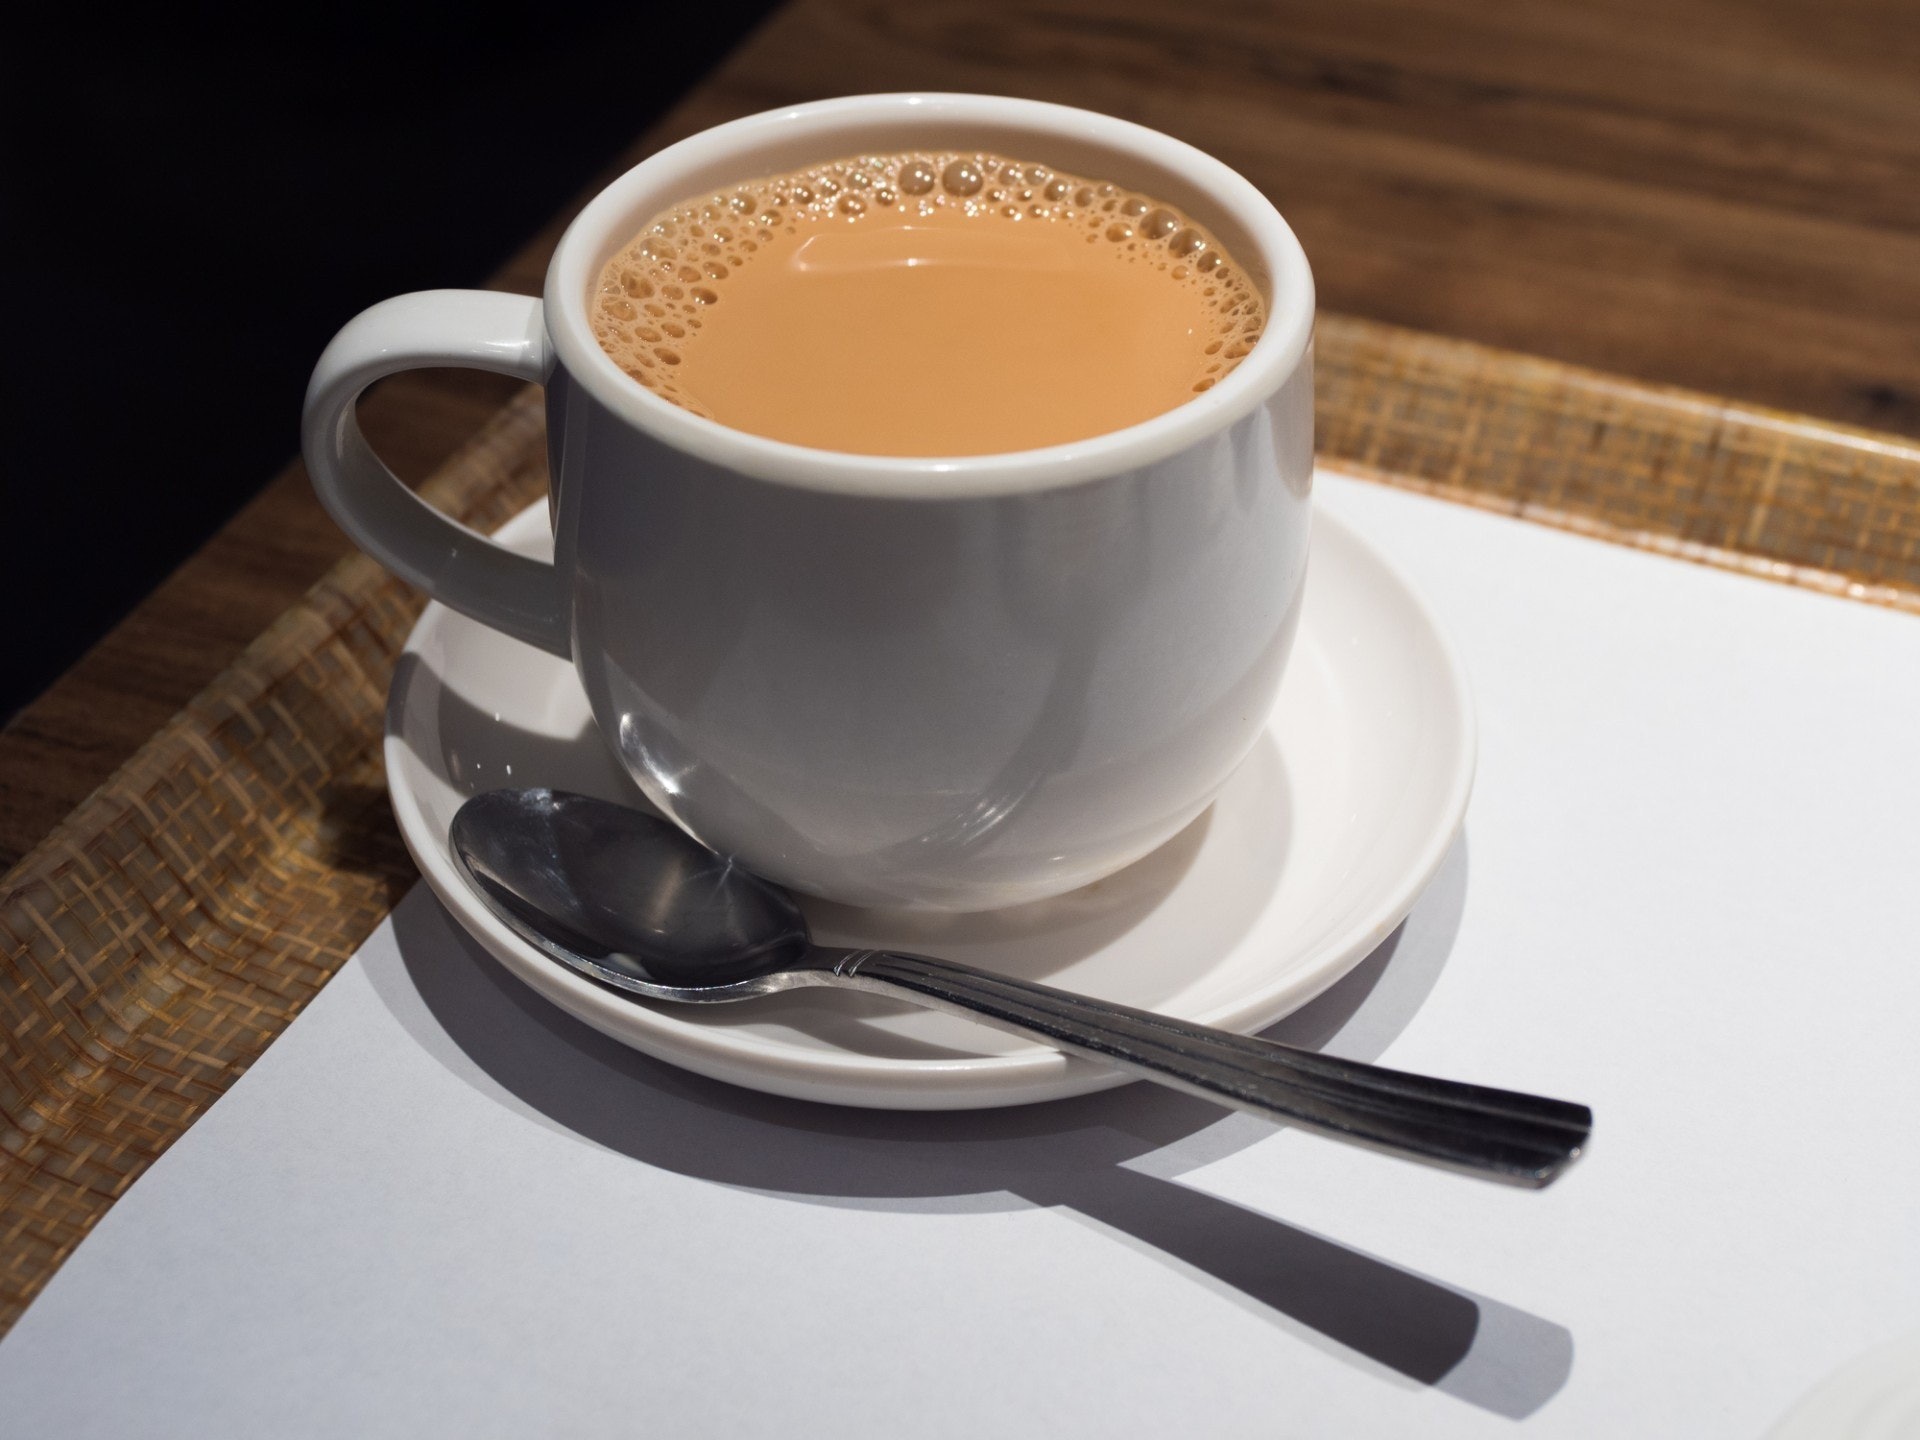 调查发现超过五成半受访者表示最经常点的饮品是港式奶茶。（资料图片 / 视觉中国）